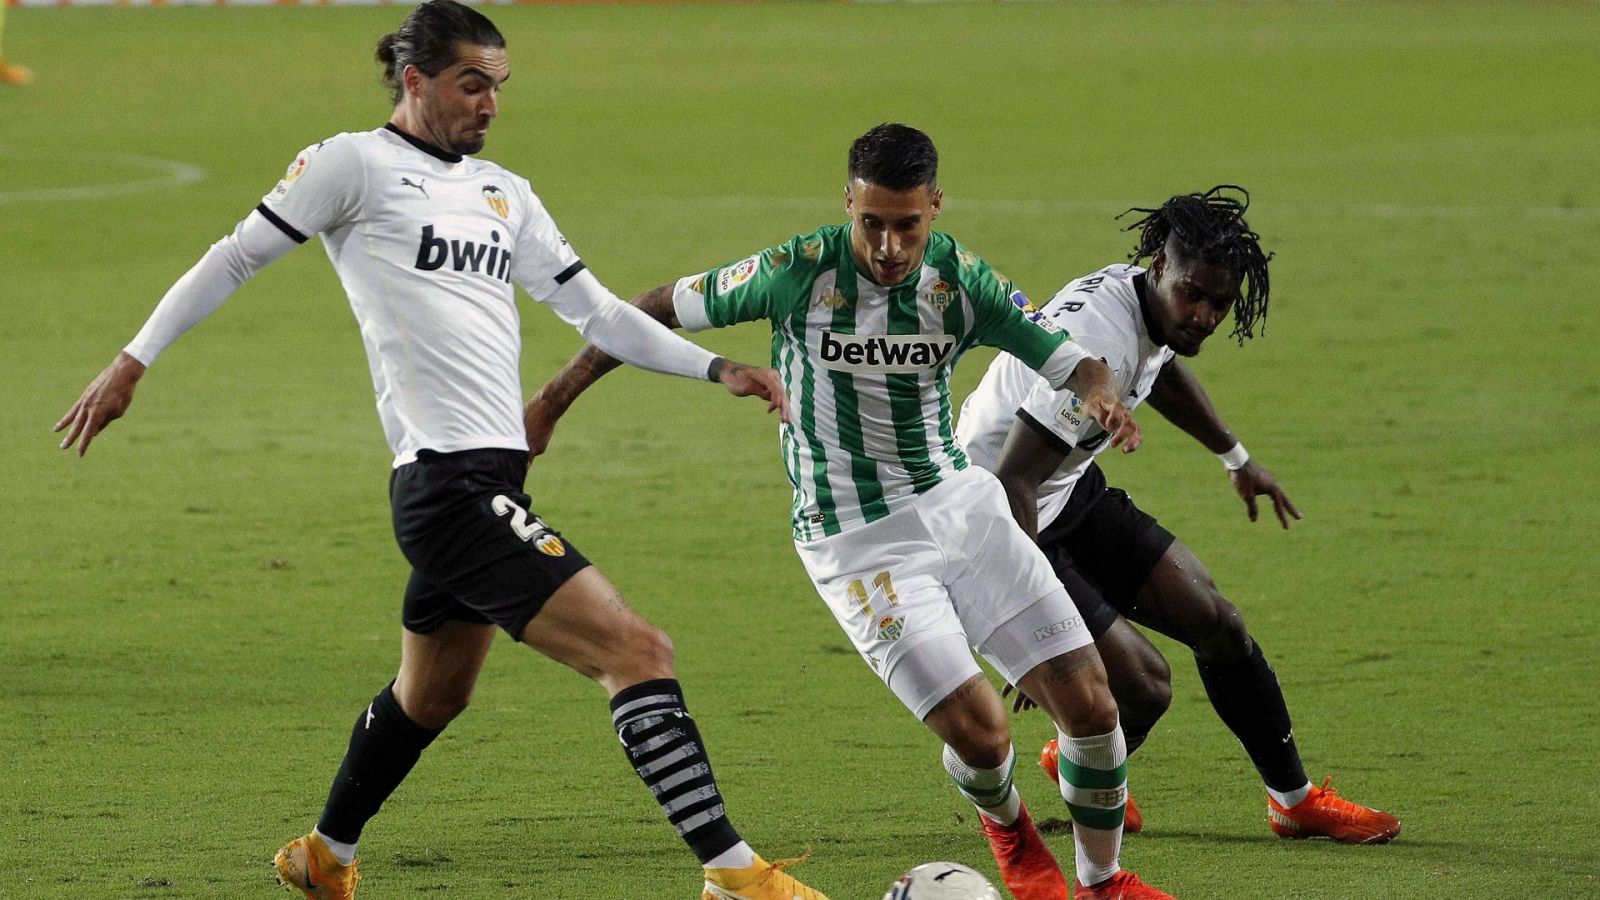 El centrocampista del Real Betis Cristian Tello (c) intenta escaparse del portugués Thierry Rendall Correia (i) y de Jason Salgueiro,